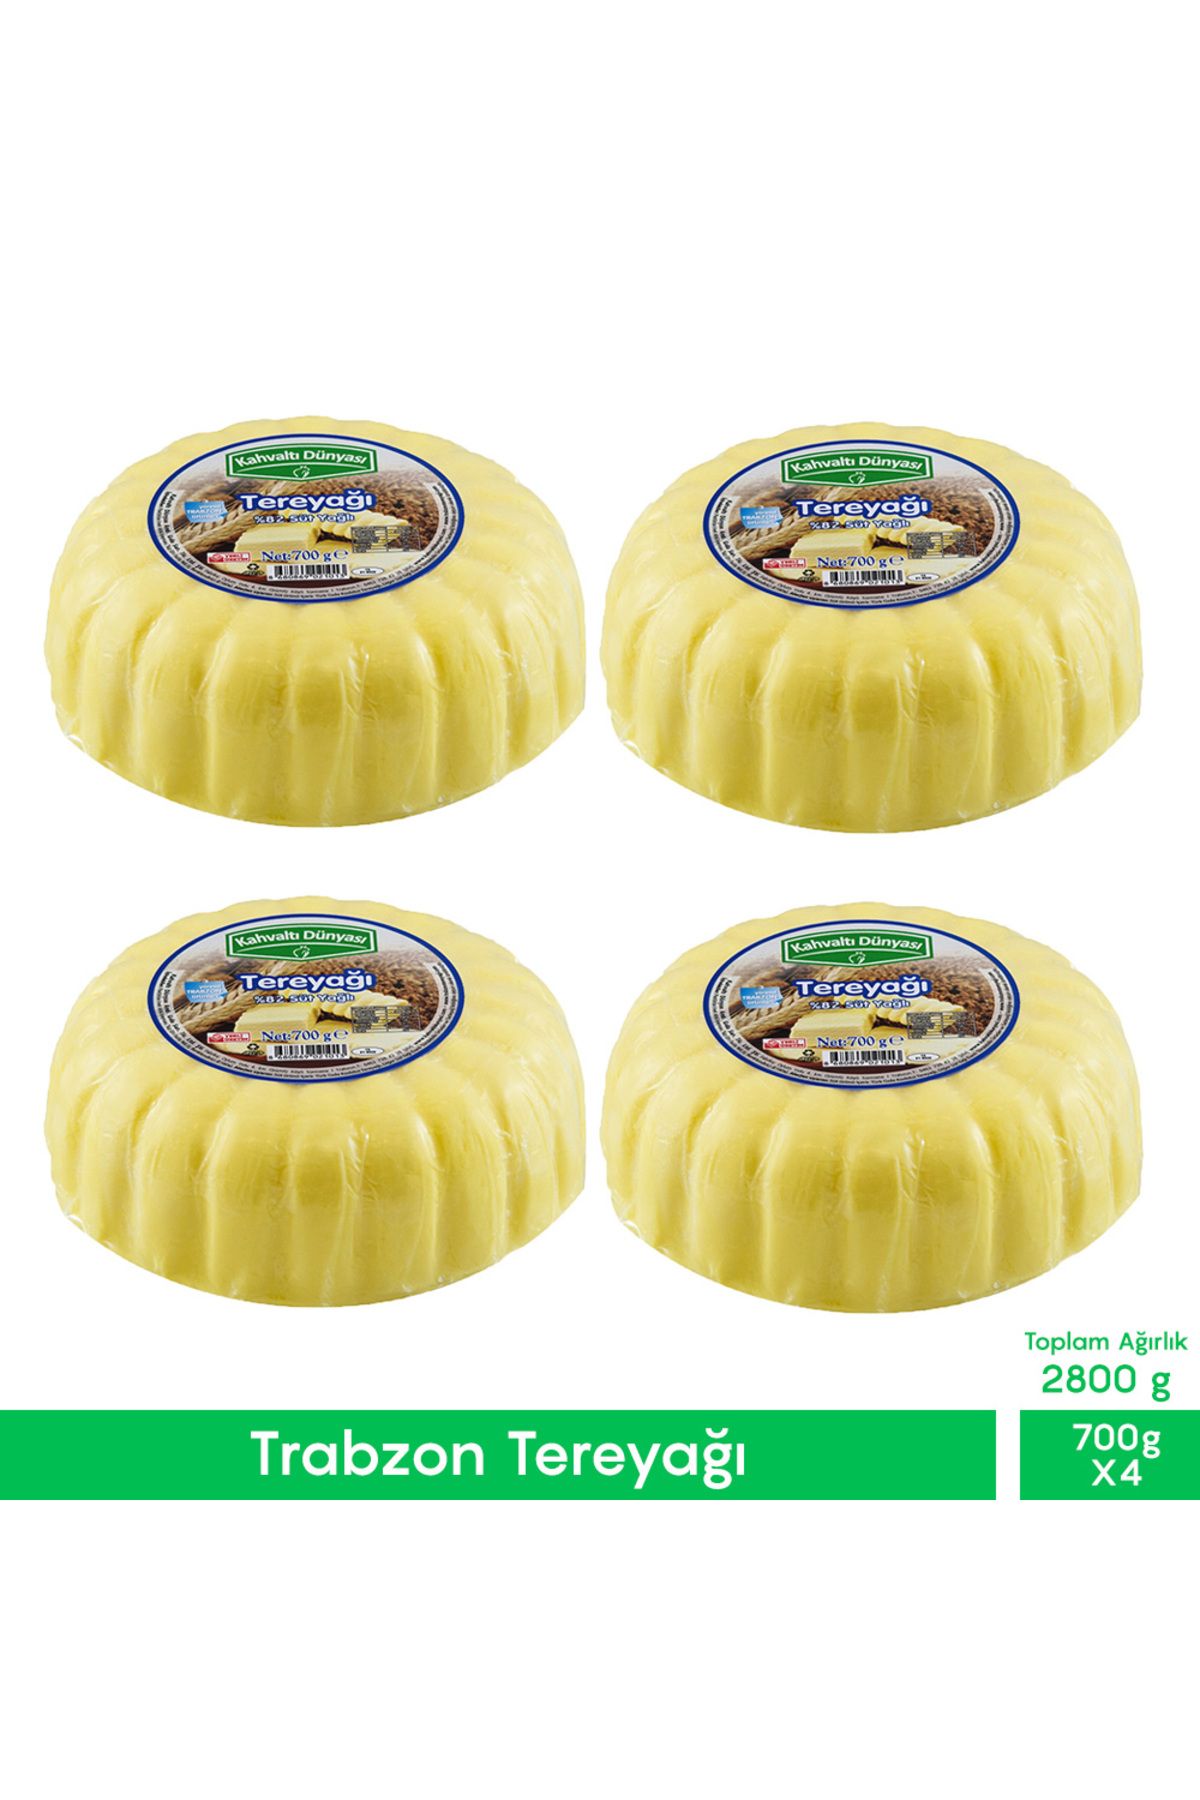 Kahvaltı Dünyası Trabzon Tereyağı 700g 4'lü Avantajlı Paket